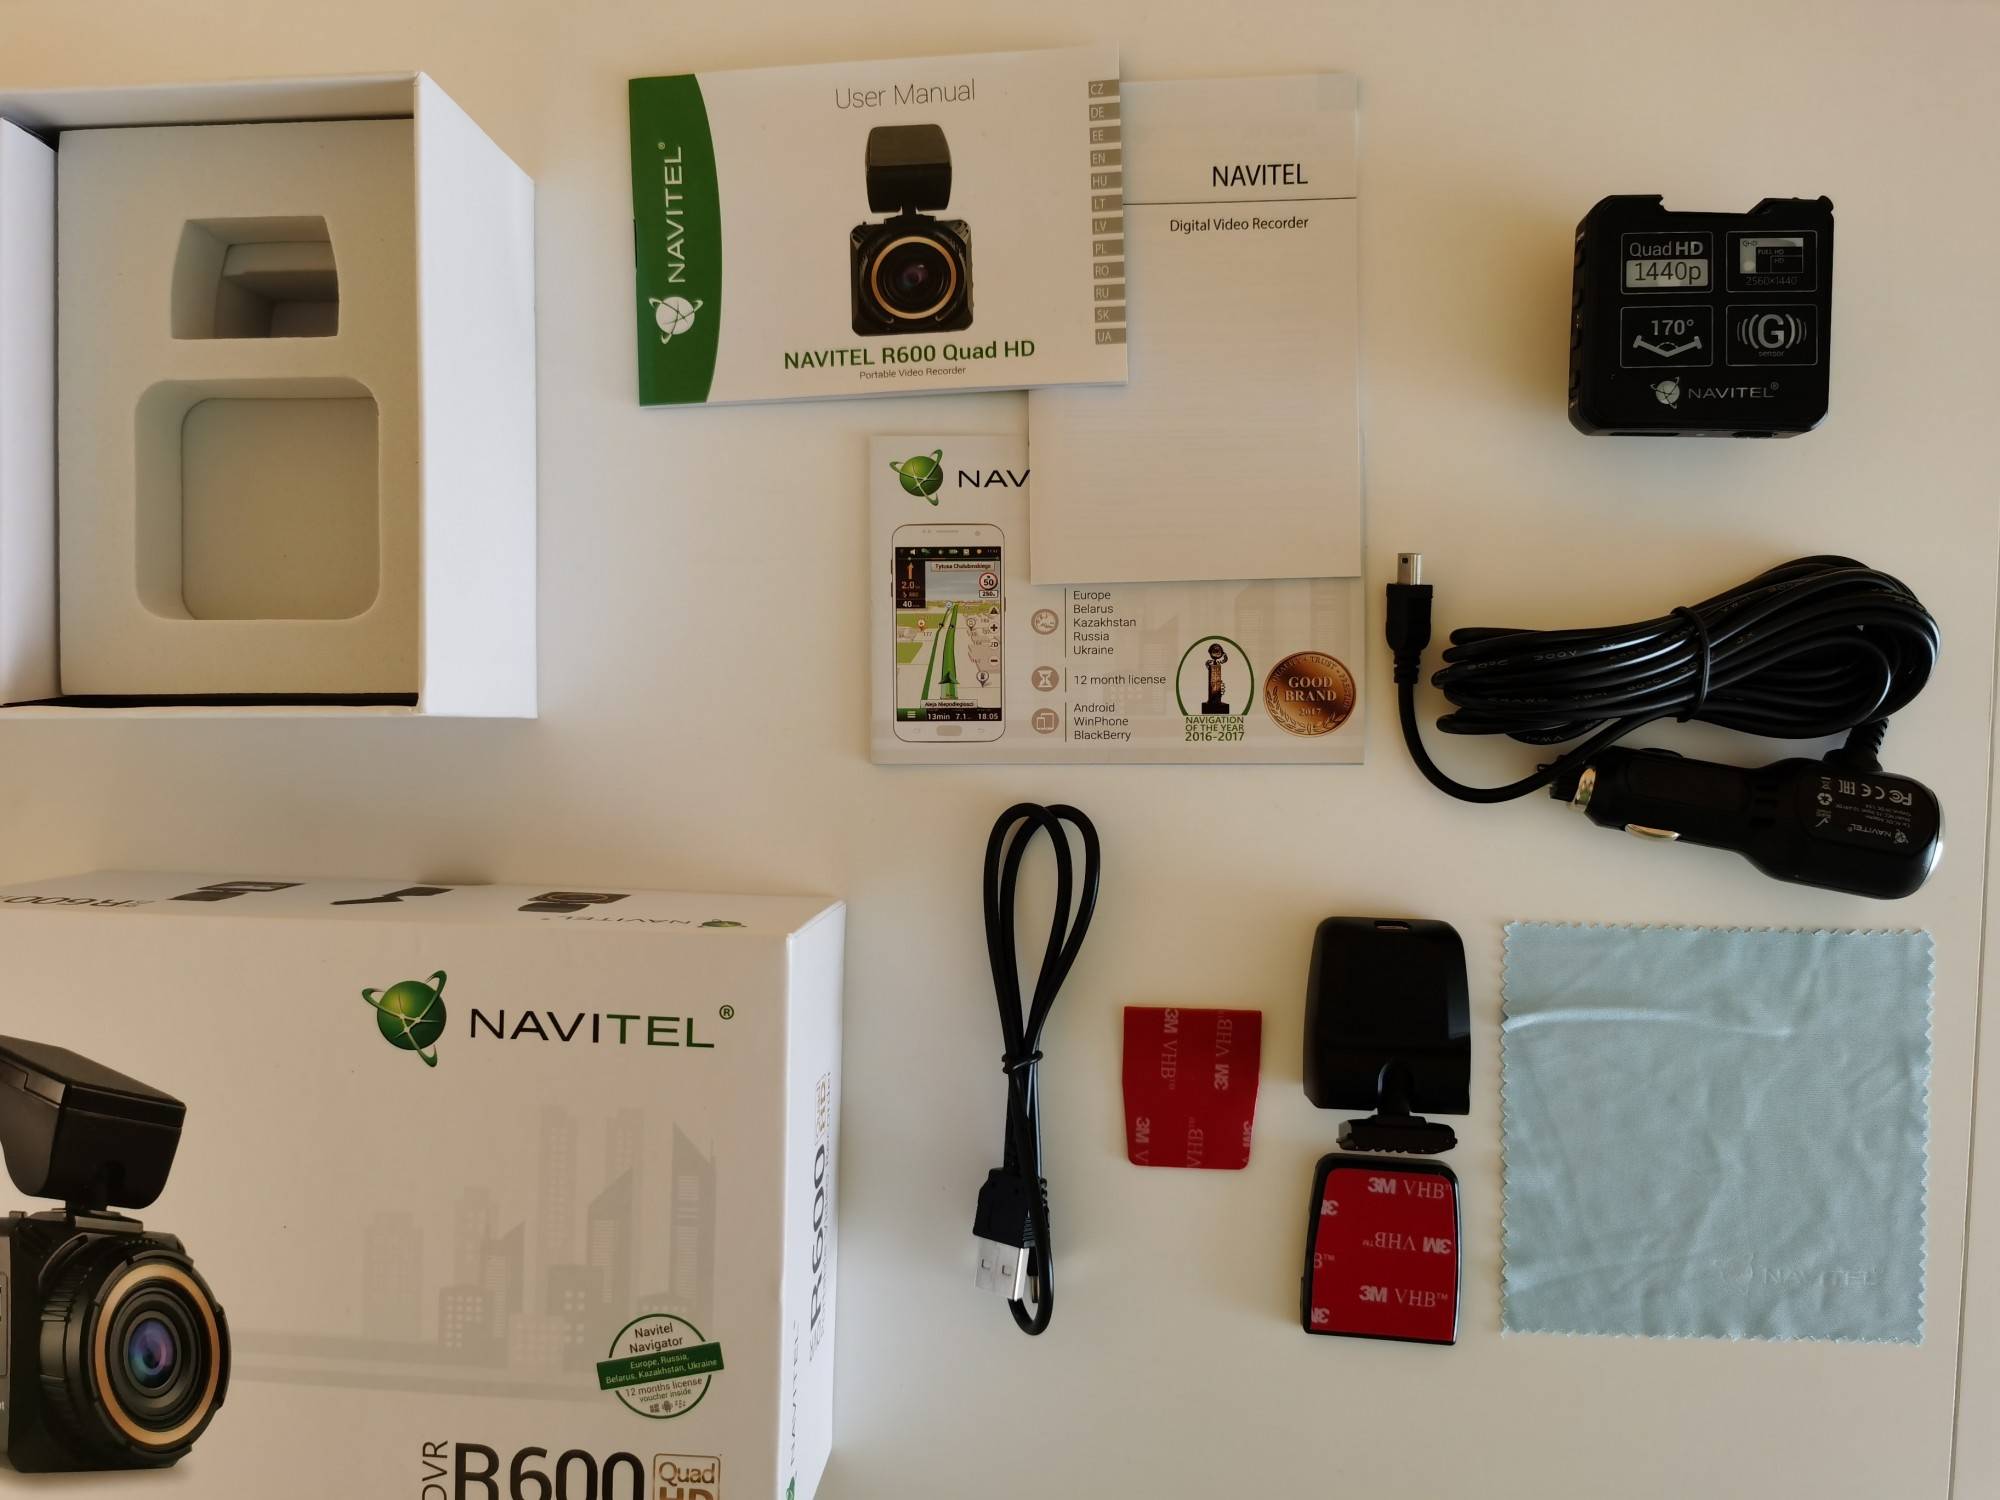 Регистратор навител (navitel r300 gps) с радаром и спидометром за шестьдесят долларов